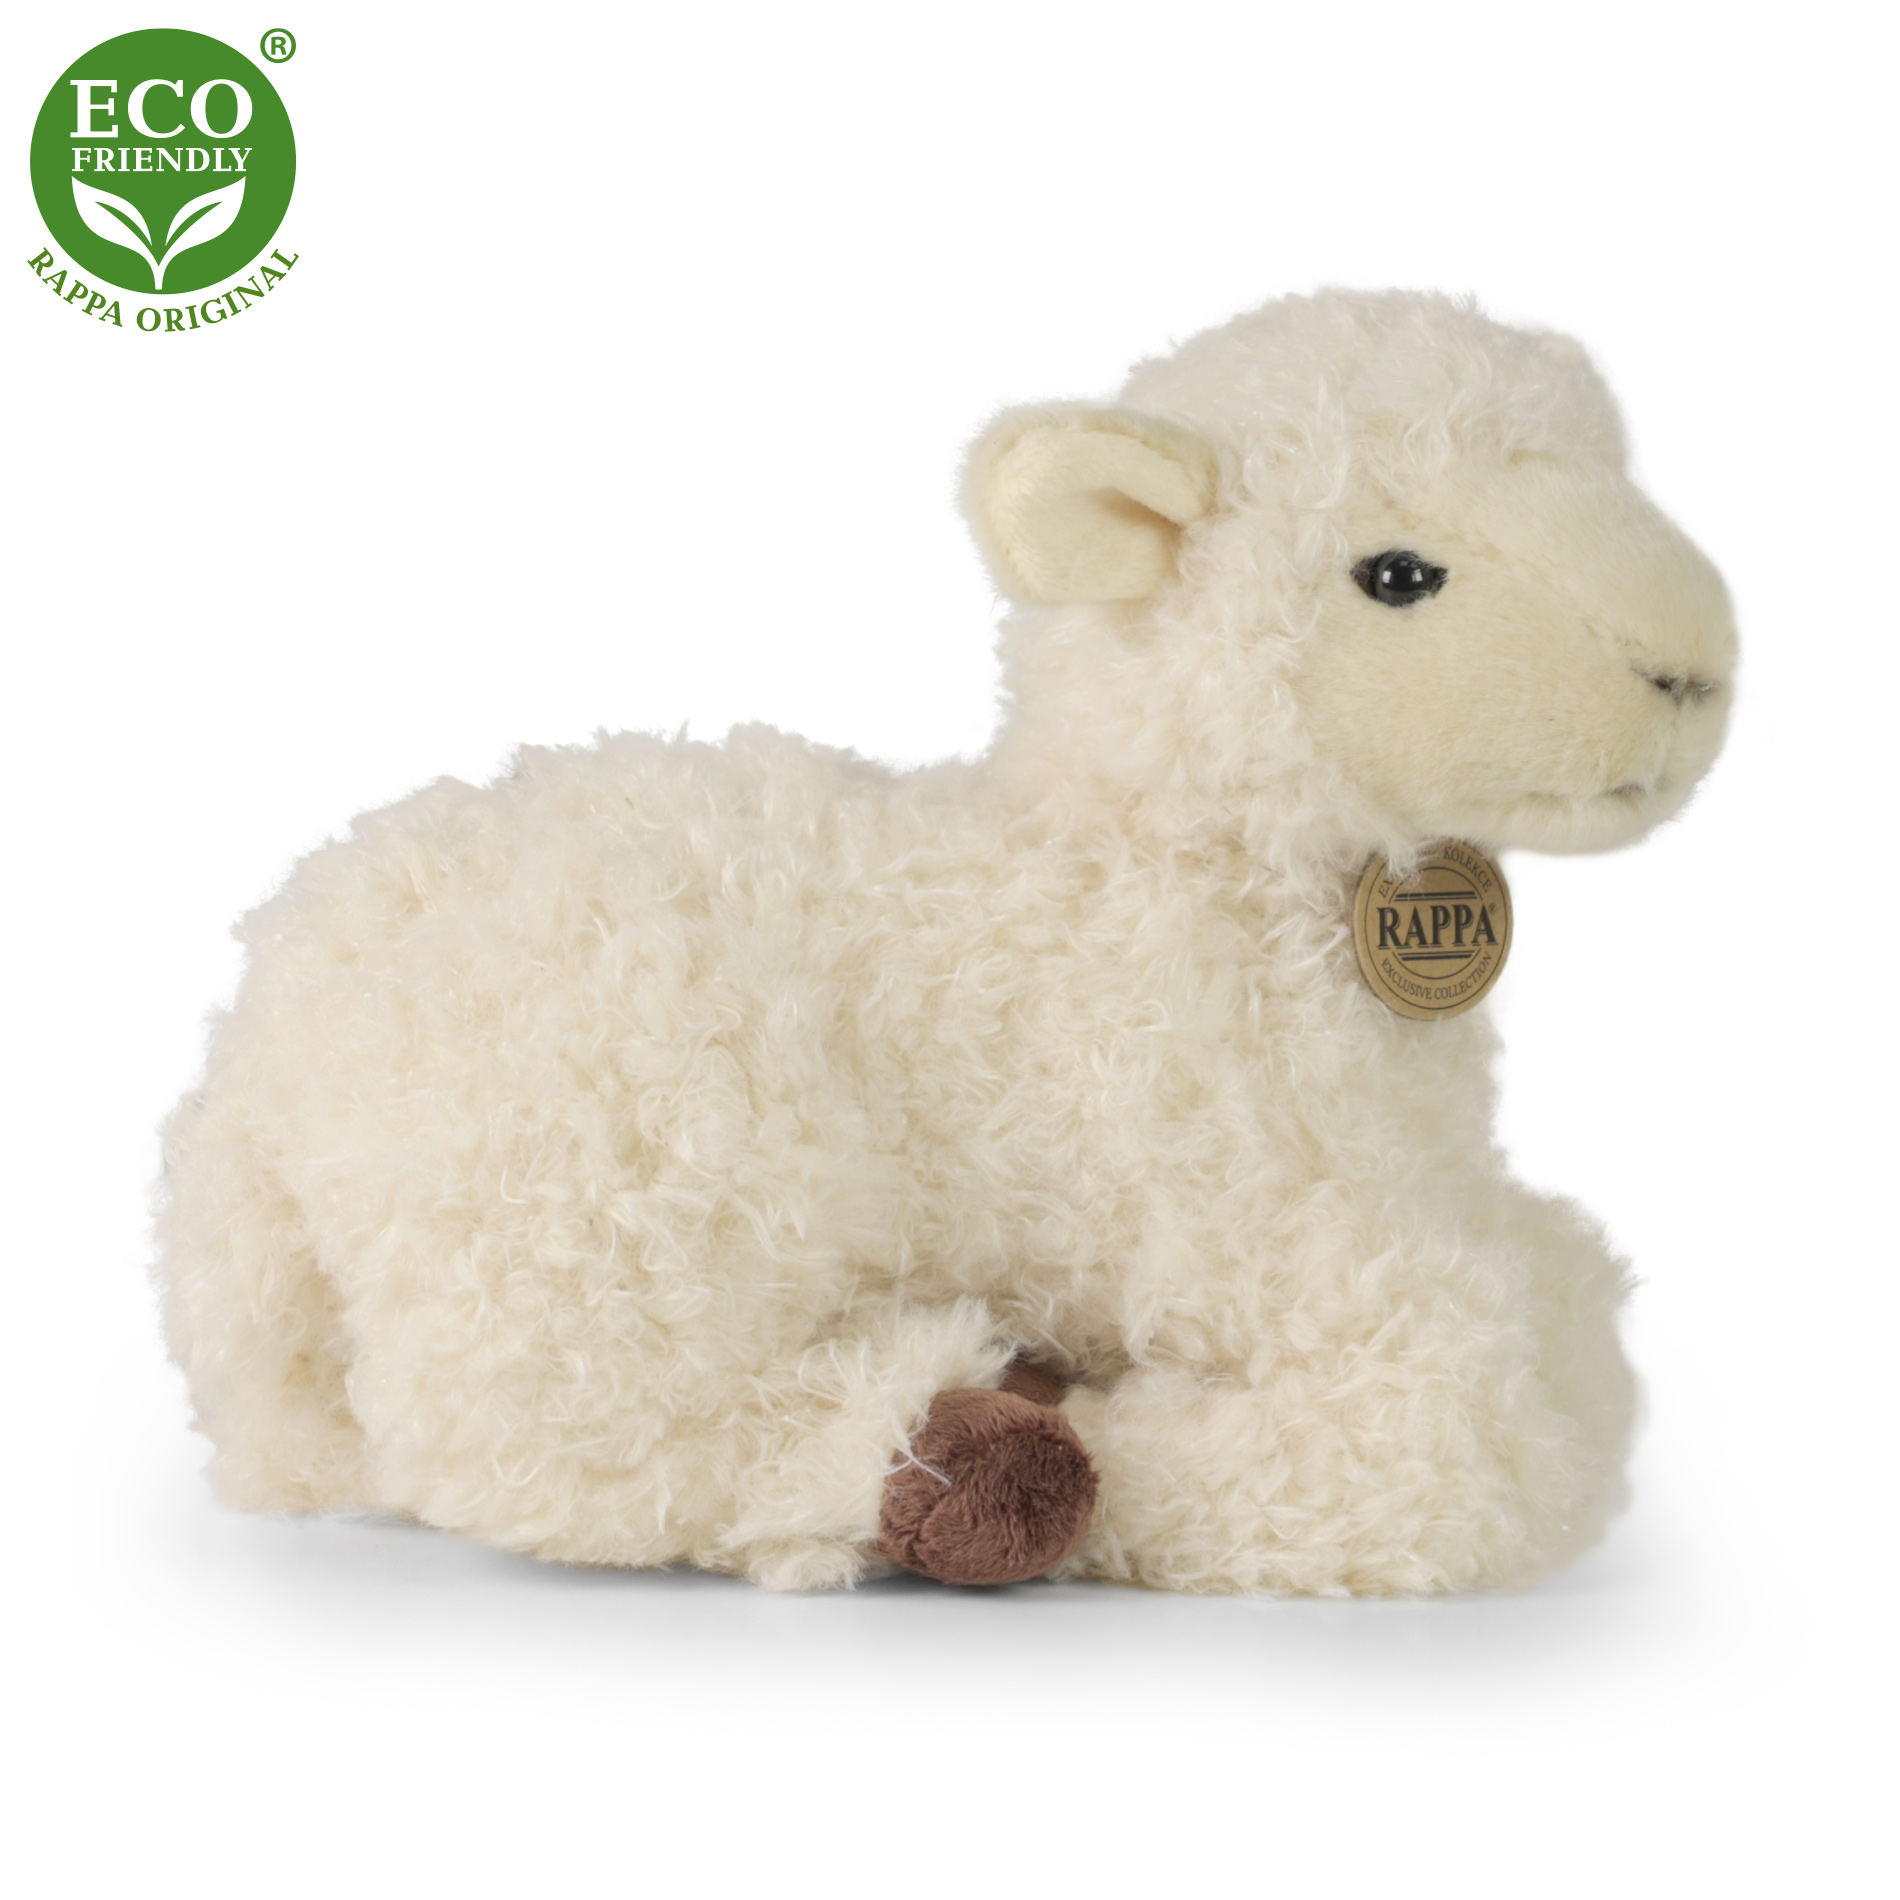 Rappa Eco-Friendly - Plyšová ovce ležící 25 cm